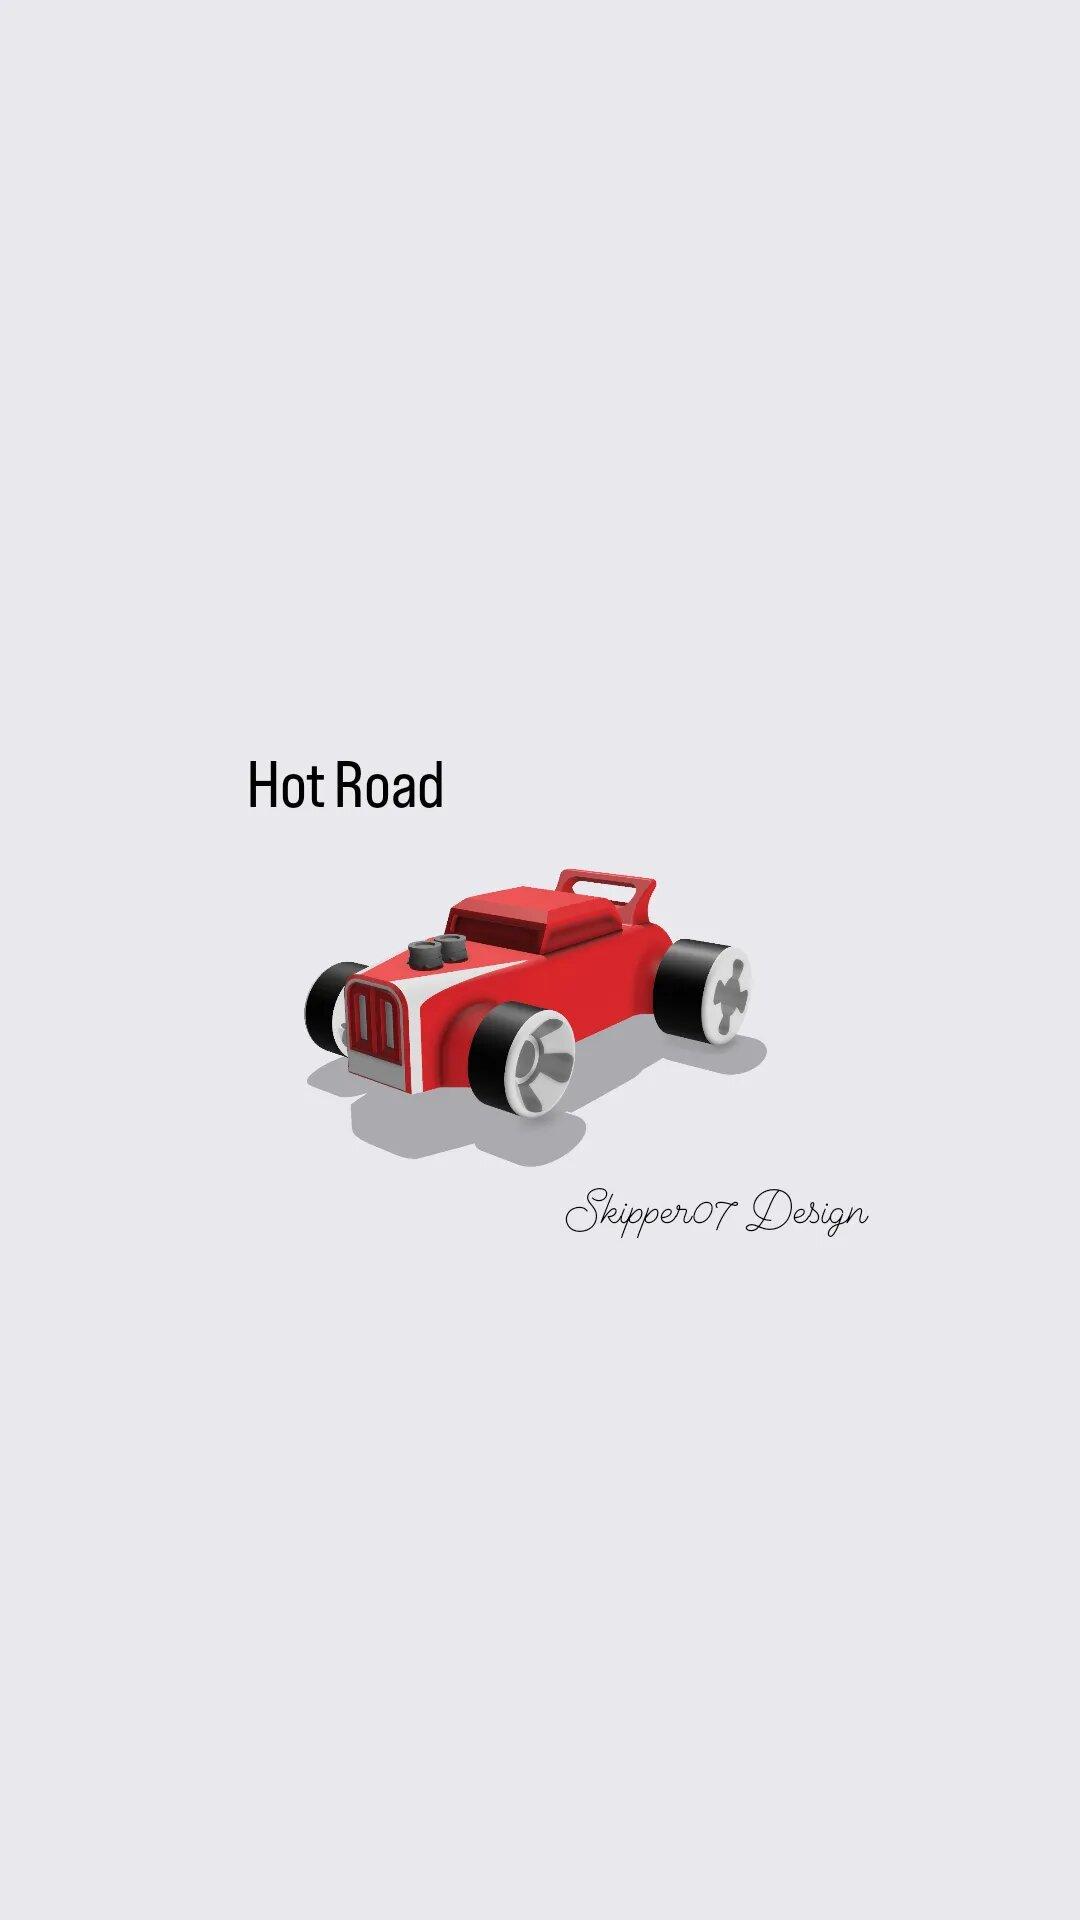 Toy Hot road 3d model